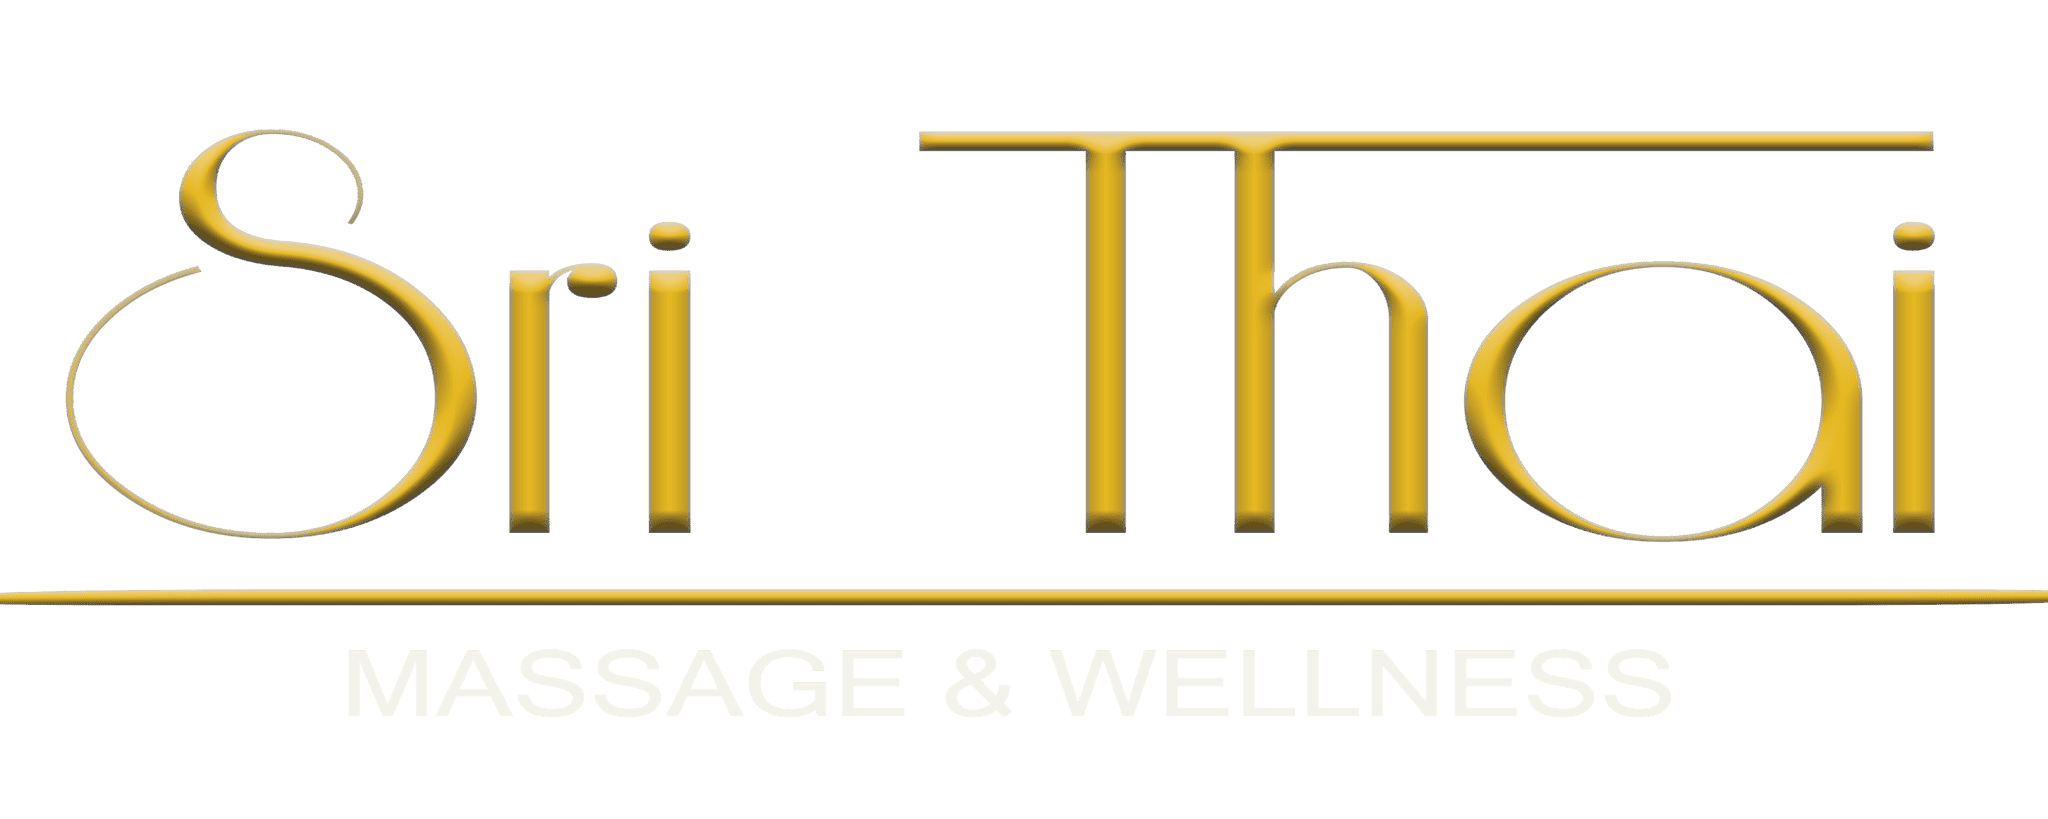 Sri Thai – Das exclusive Thai Massage Studio in Bad Vilbel